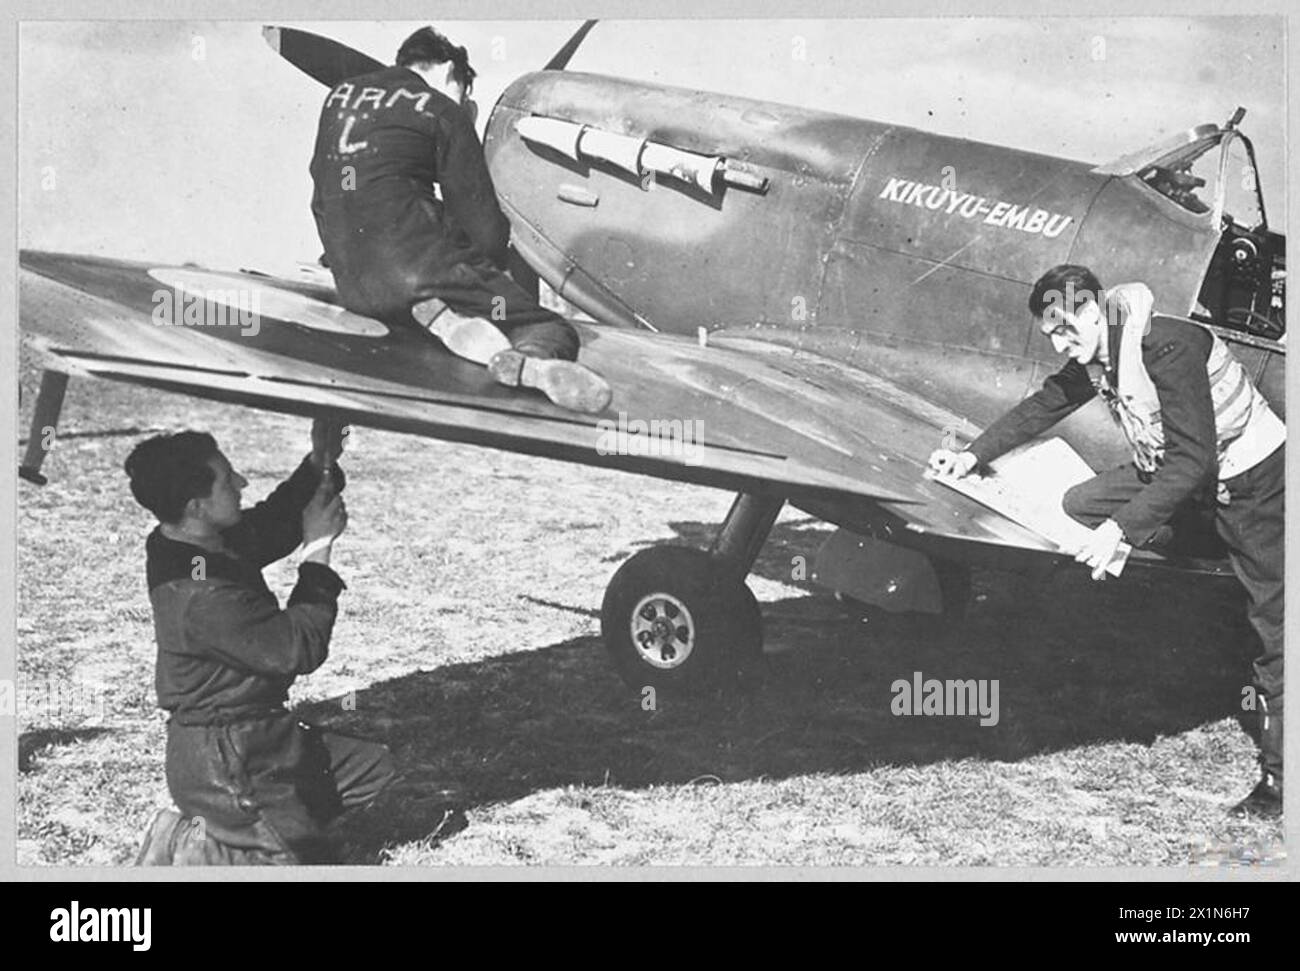 SPITFIRE DONATO DAI CAPI DEL KENYA IN FUNZIONE CON R.A.F. - 7678. Pilota e equipaggio di terra con il "Kikuyu-Embu" presso una stazione di caccia R.A.F. [pilota - sergente Bunte della Florida], Royal Air Force Foto Stock